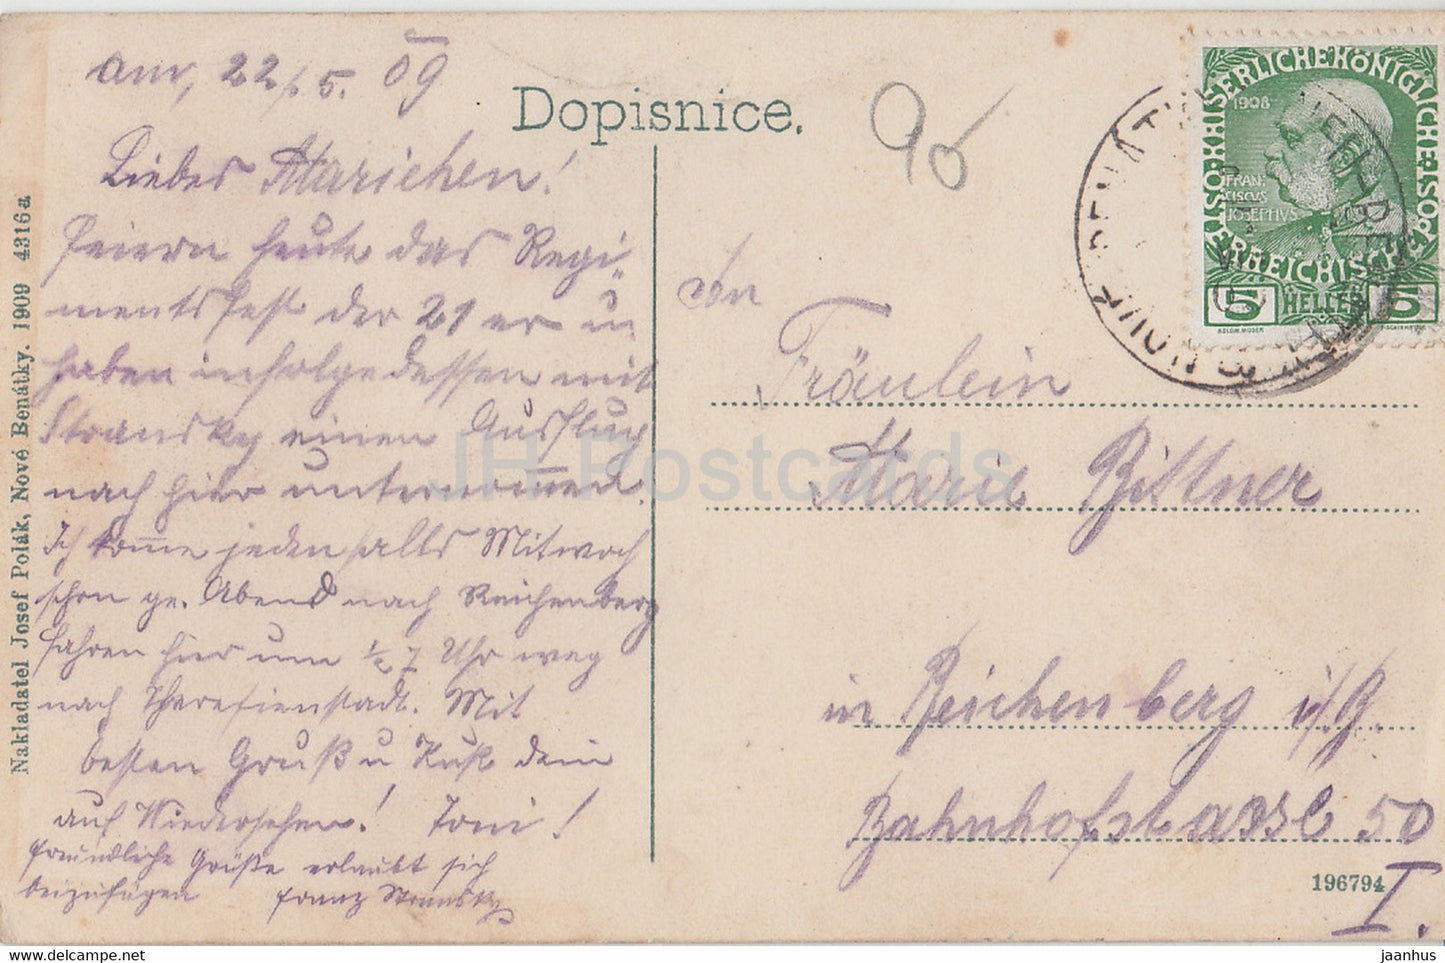 Stare Benatky - alte Postkarte - 1909 - Tschechien - gebraucht